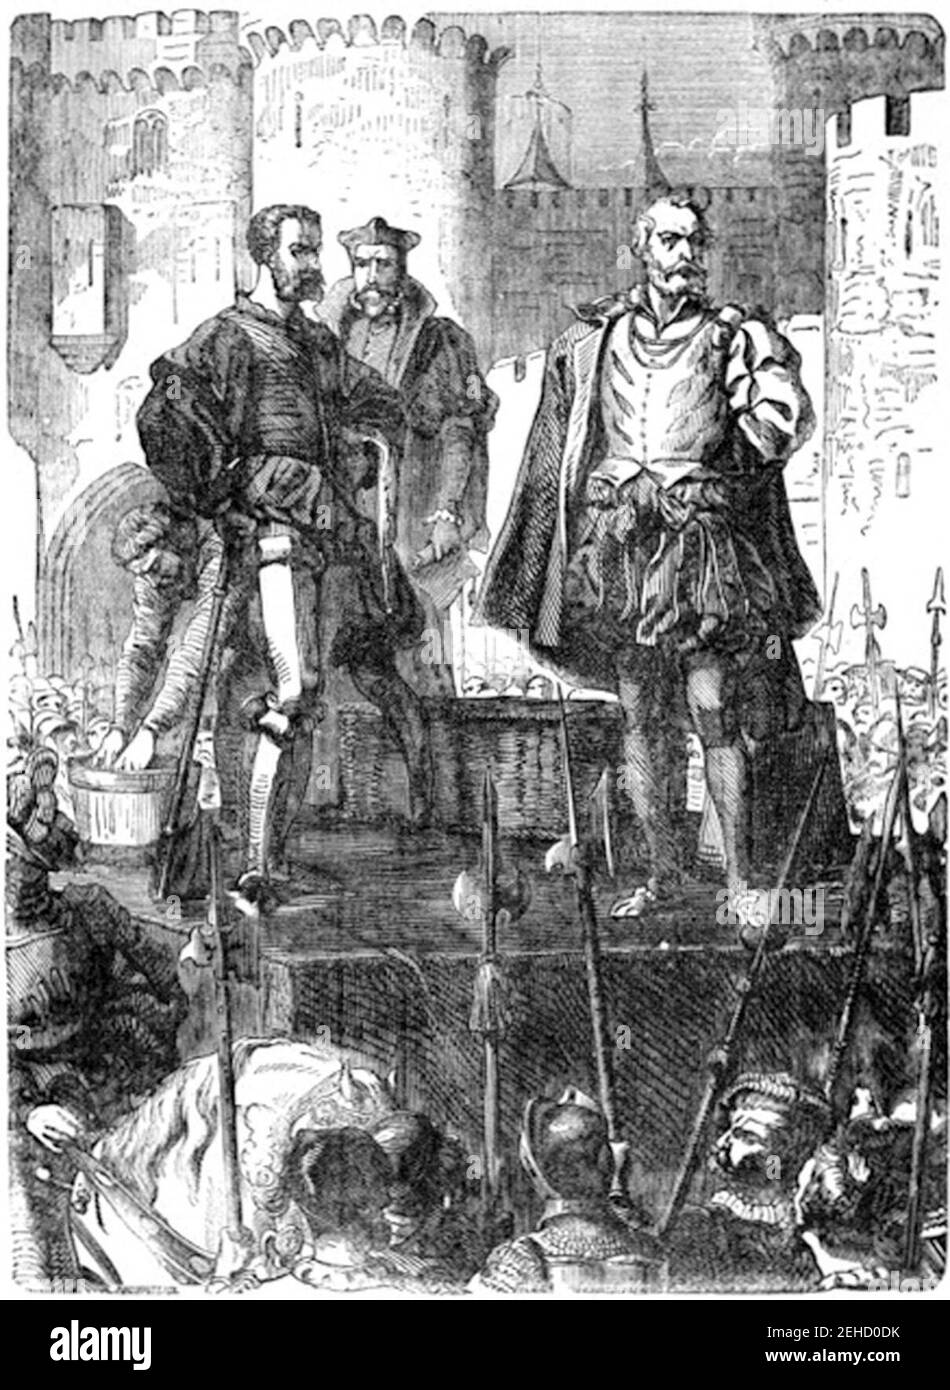 P154 Execution of the Duke of Buckingham. Stock Photo